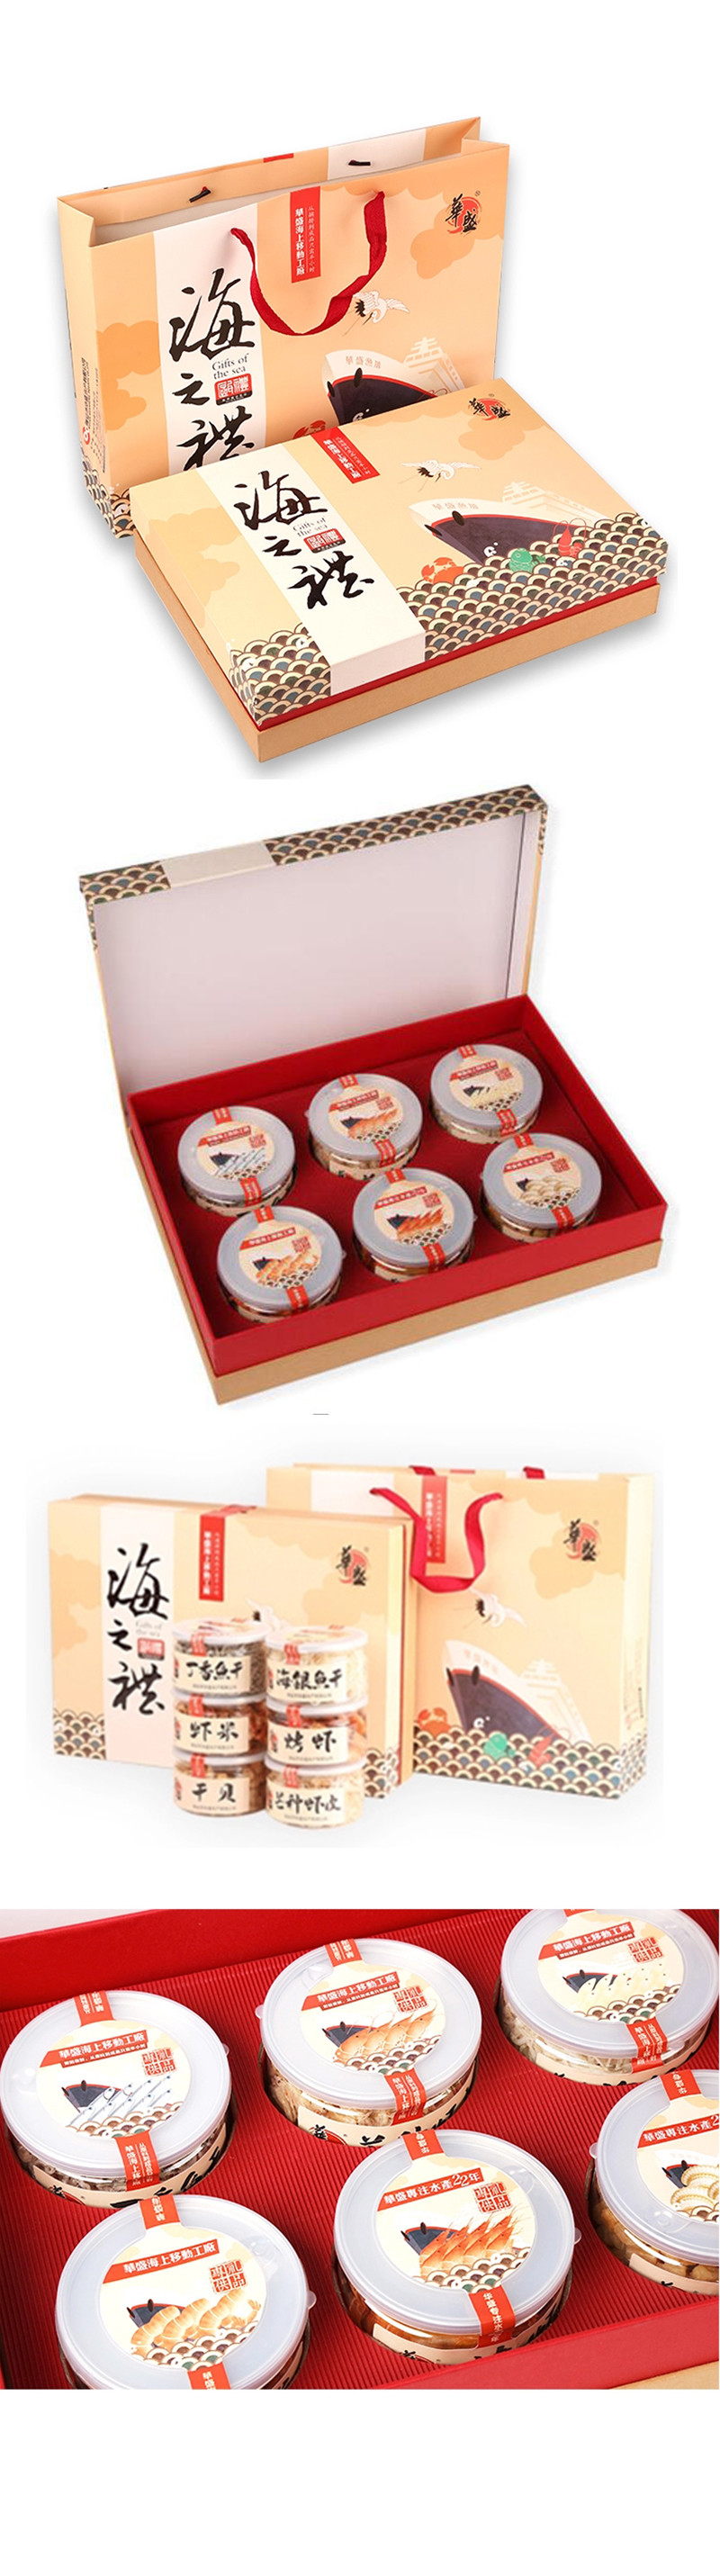 虾皮干贝海货礼盒包装设计